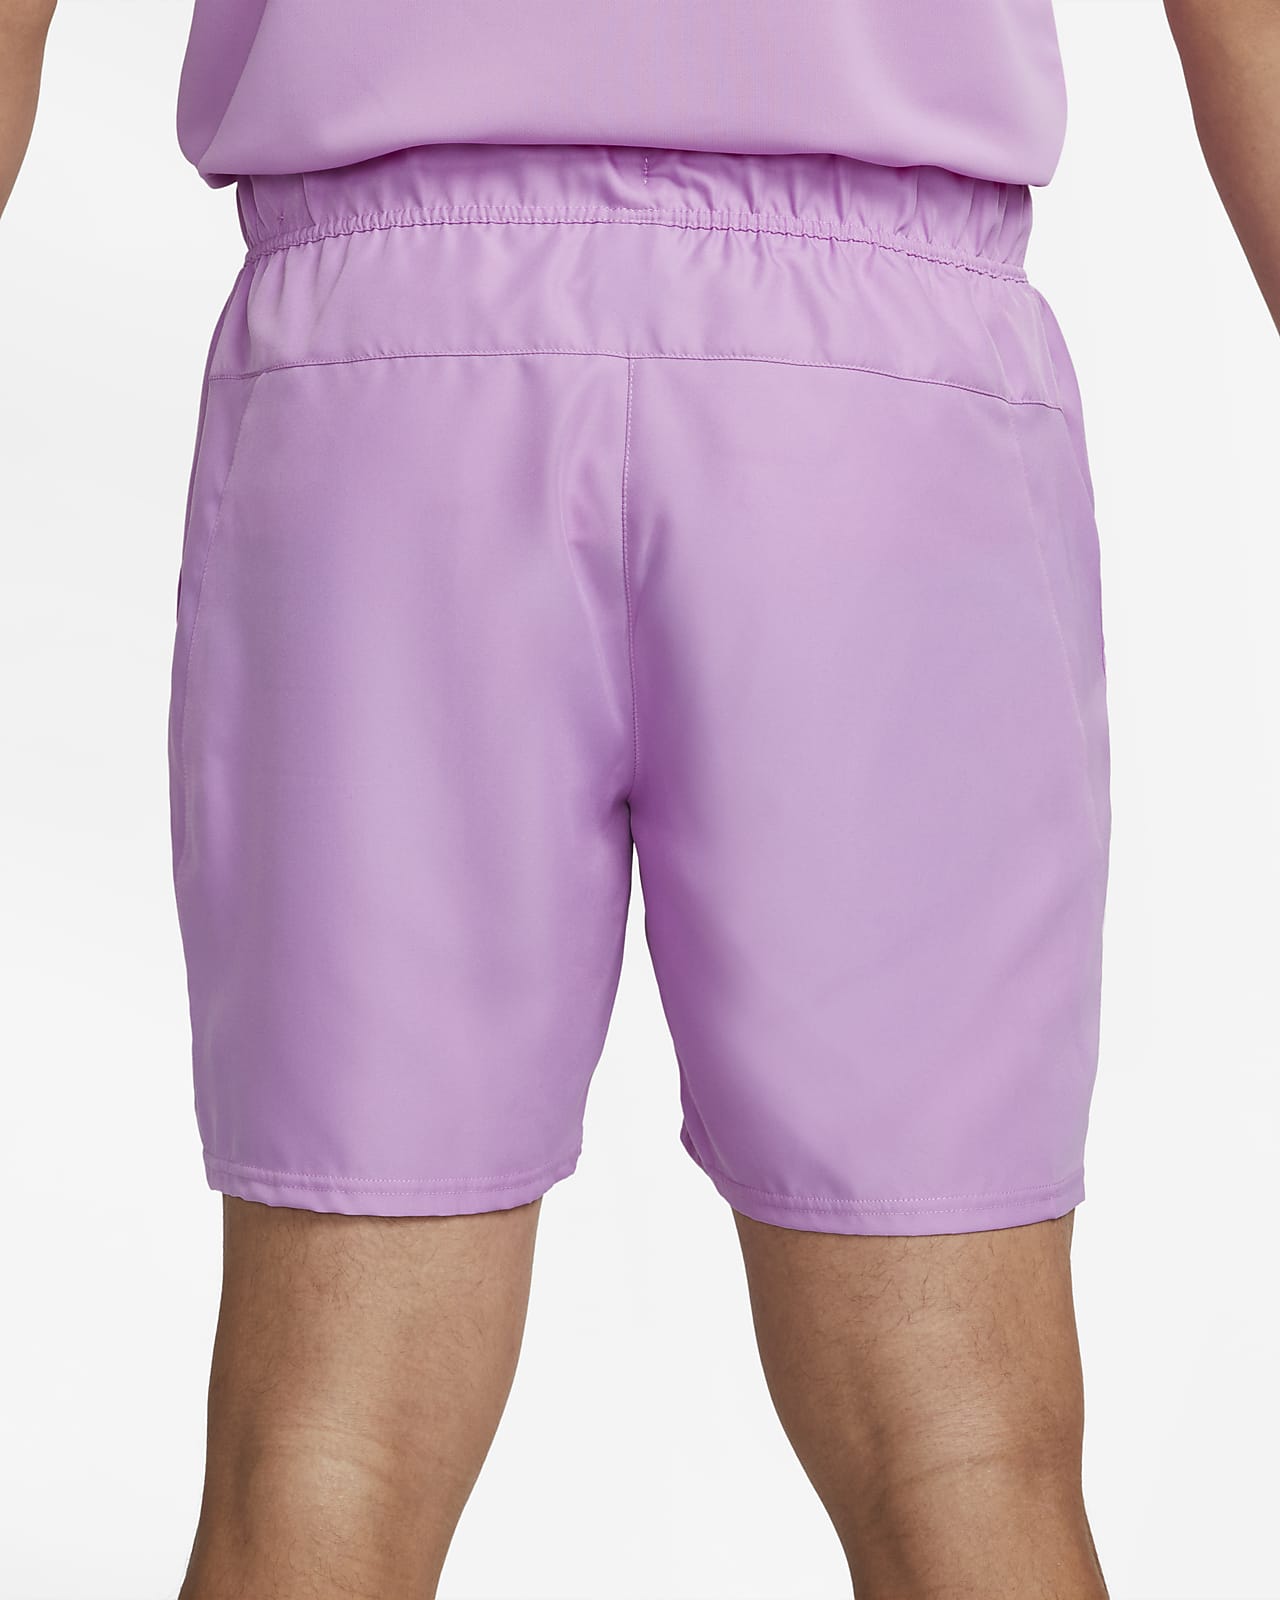 nike pink tennis shorts